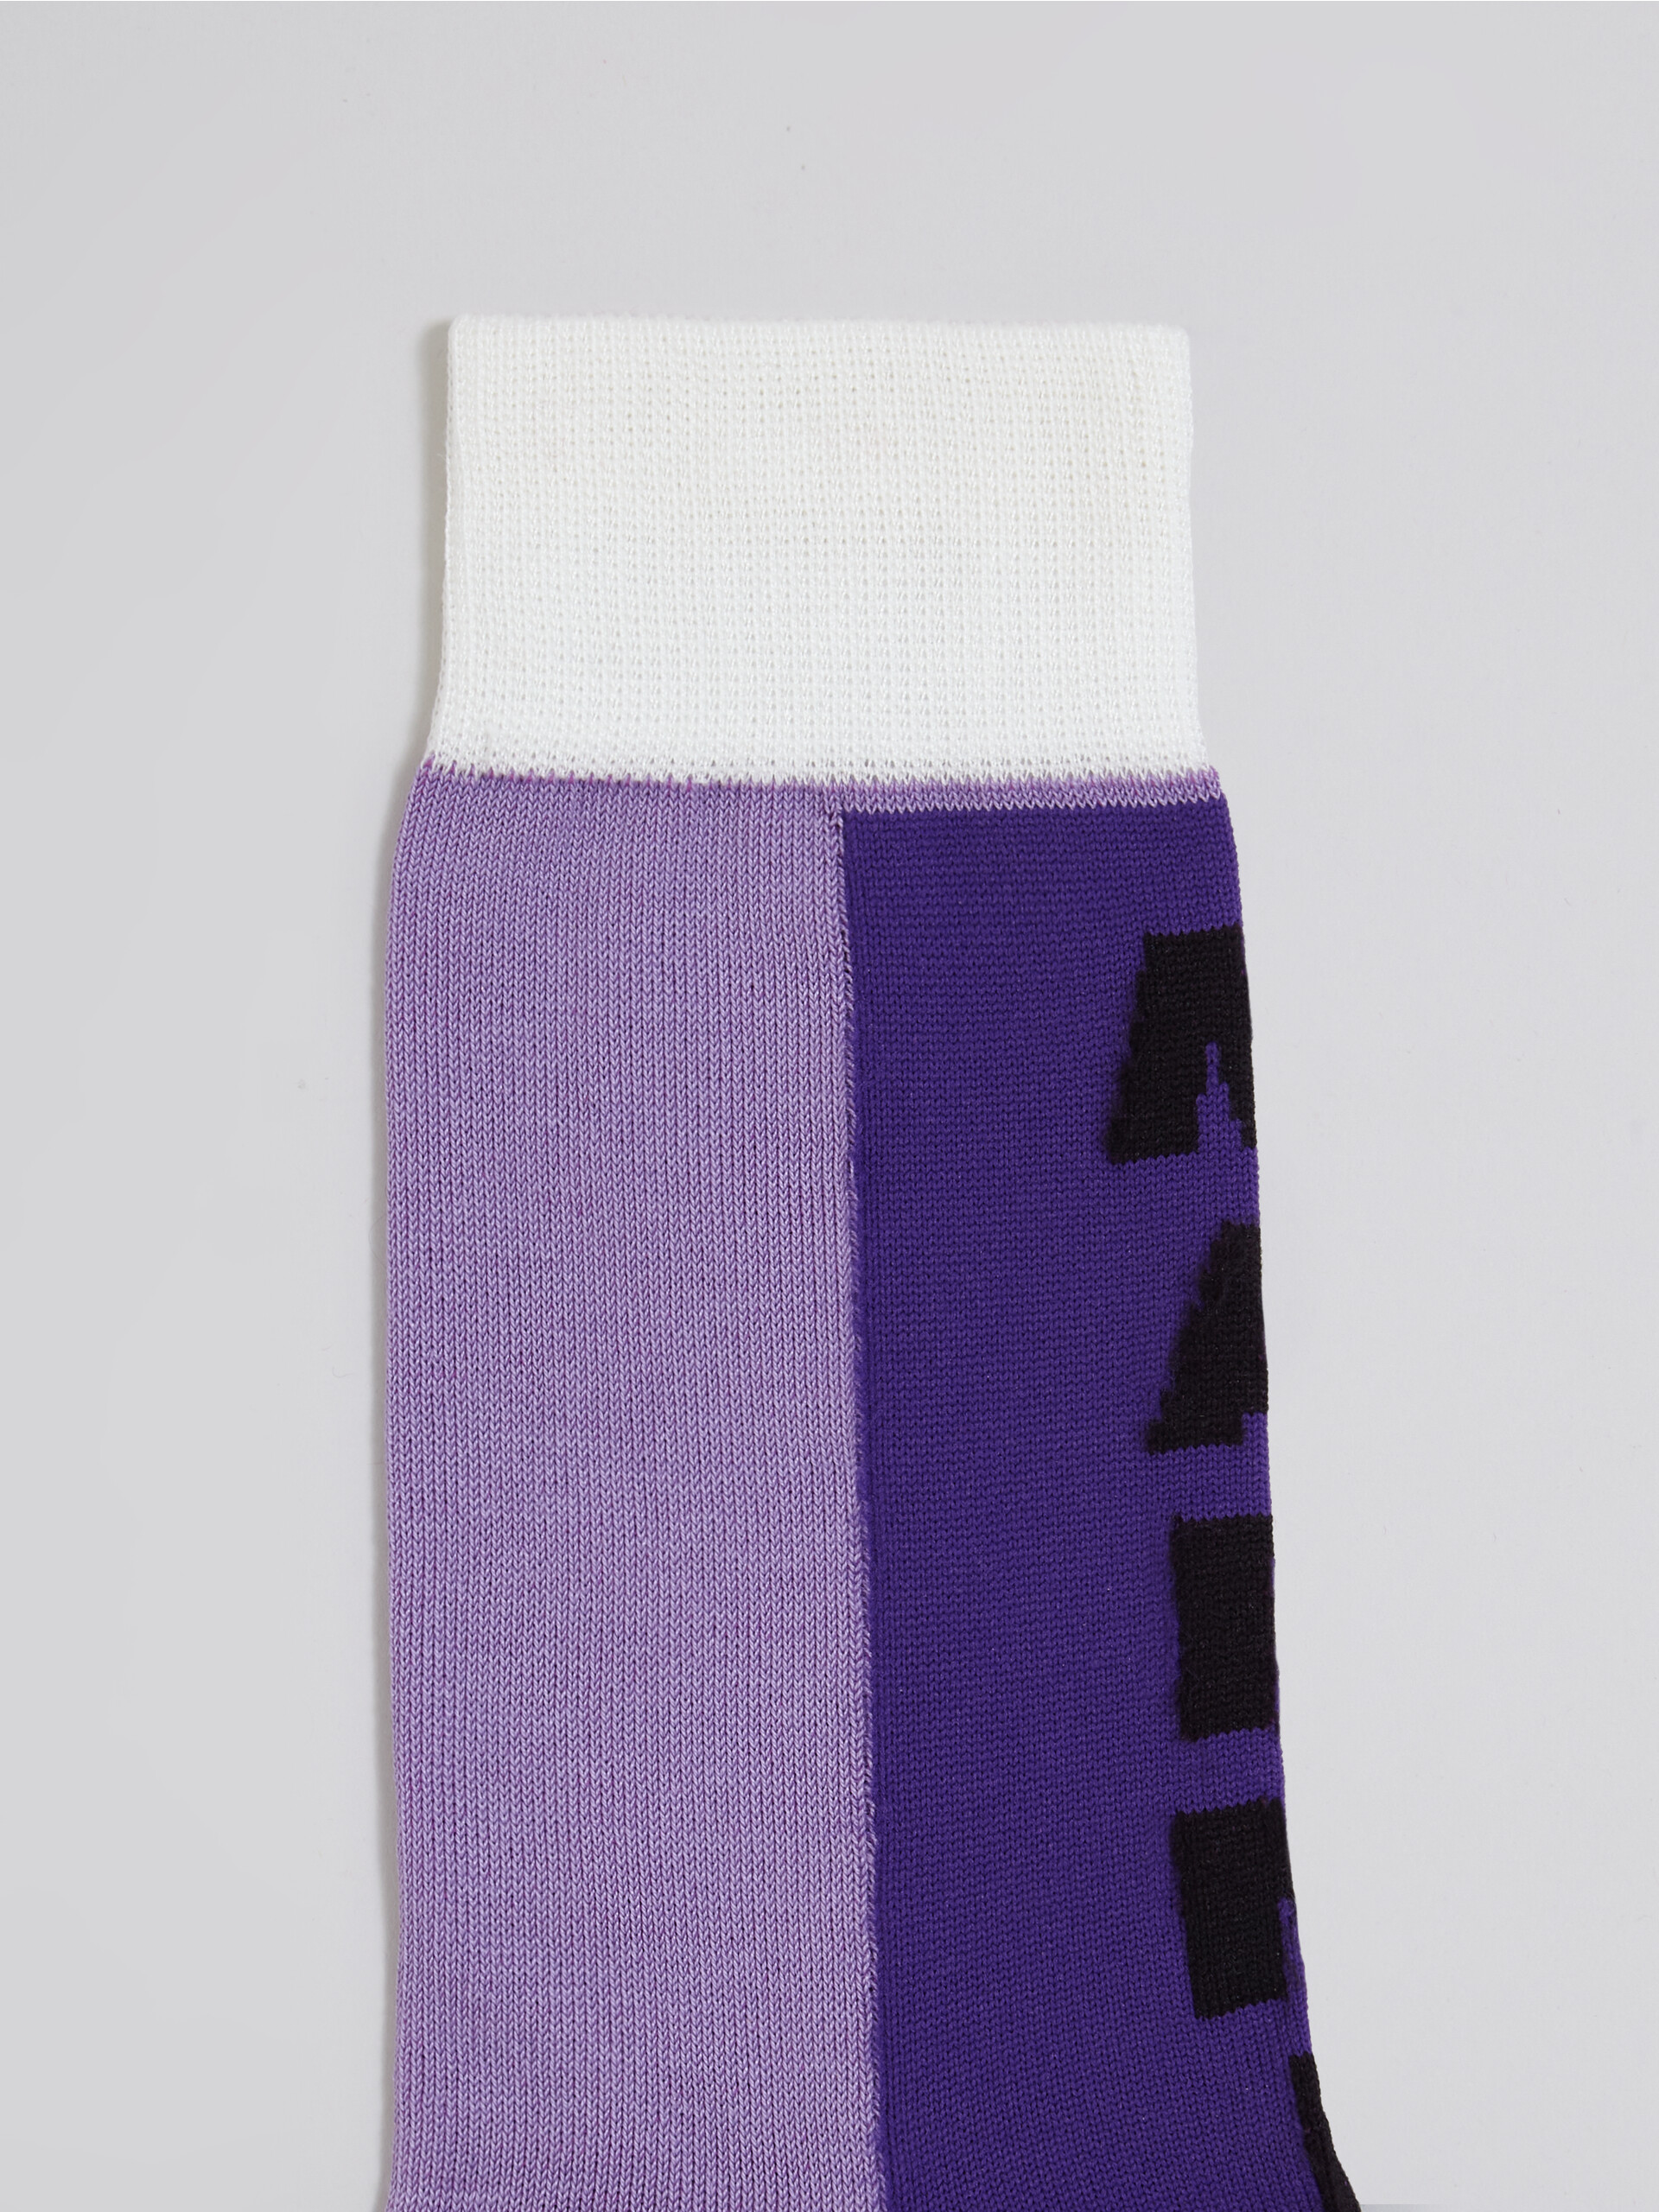 Calza in cotone e nylon con logo intarsio viola - Calze - Image 3